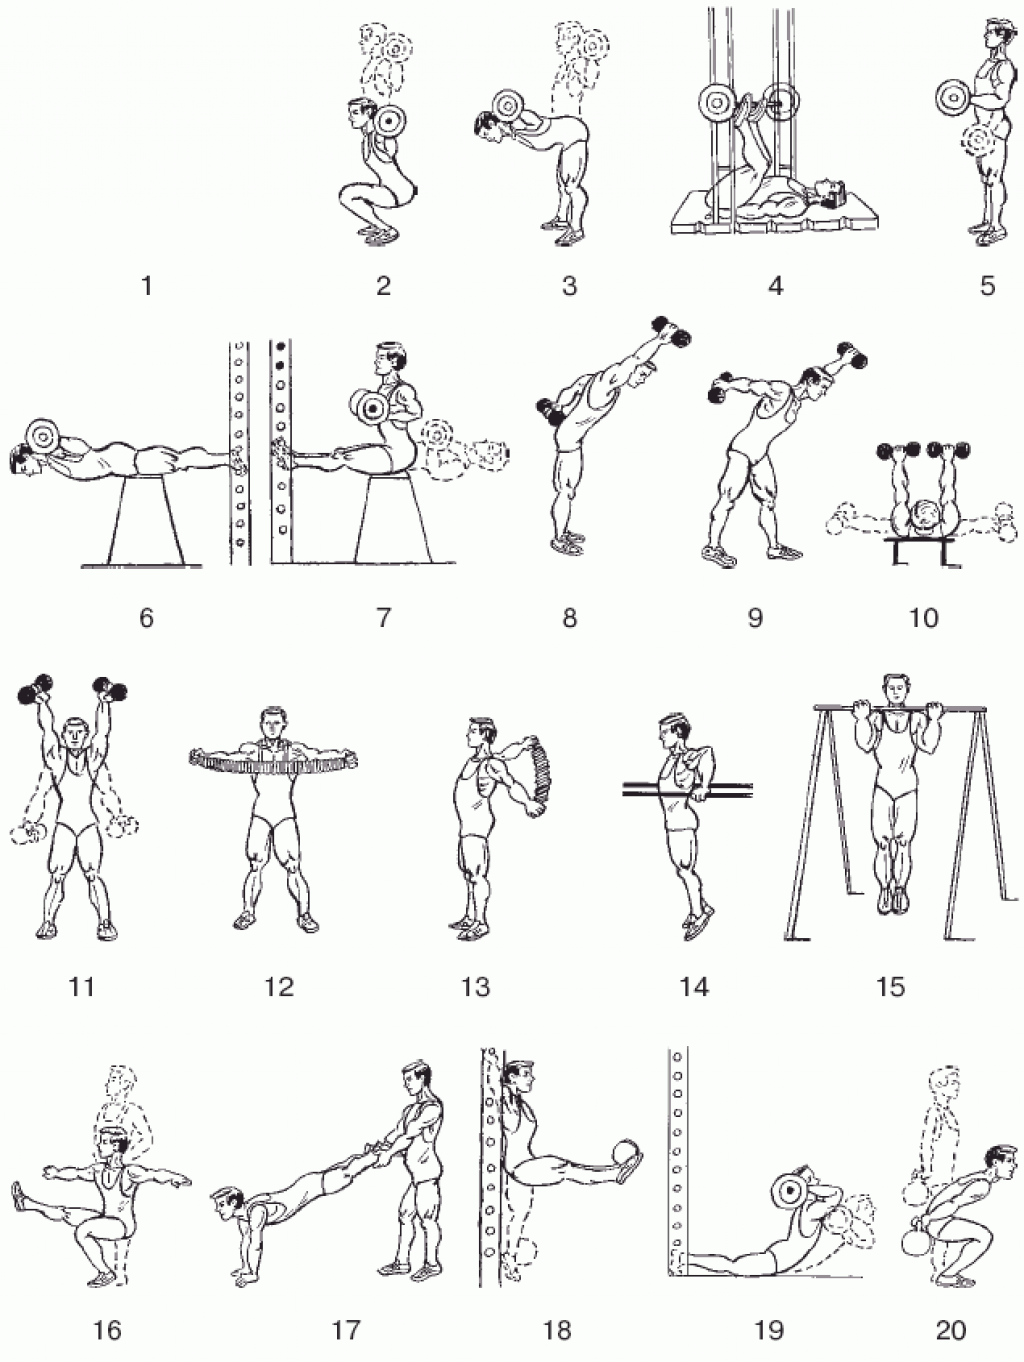 Зарядка с гантелями дома. Комплекс упражнений с гантелями (10-12 упражнений). Комплекс силовых упражнений с гантелями. Гантельная гимнастика комплекс 1/ для начинающих. Упражнения с гантелями на разные группы мышц.